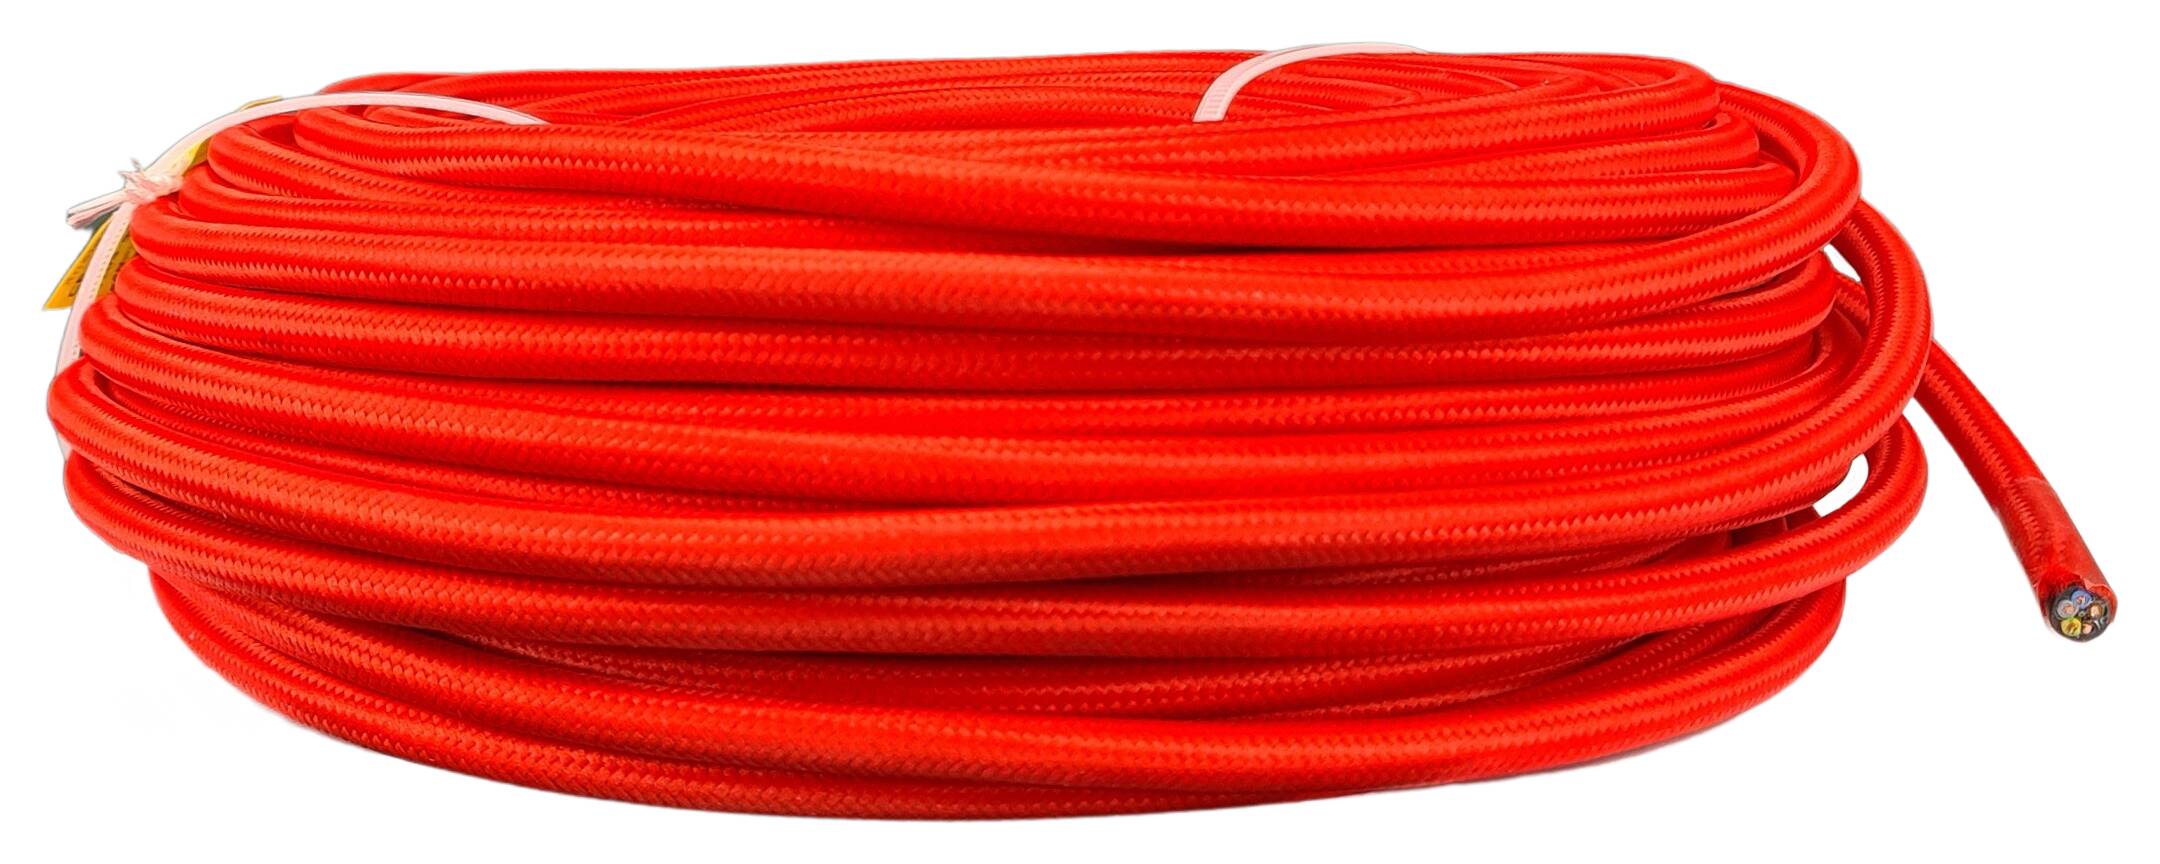 Kabel m. Stahlseil 5G 0,75 HO5VV-F PVC  textilummantelt RAL 3028 rot